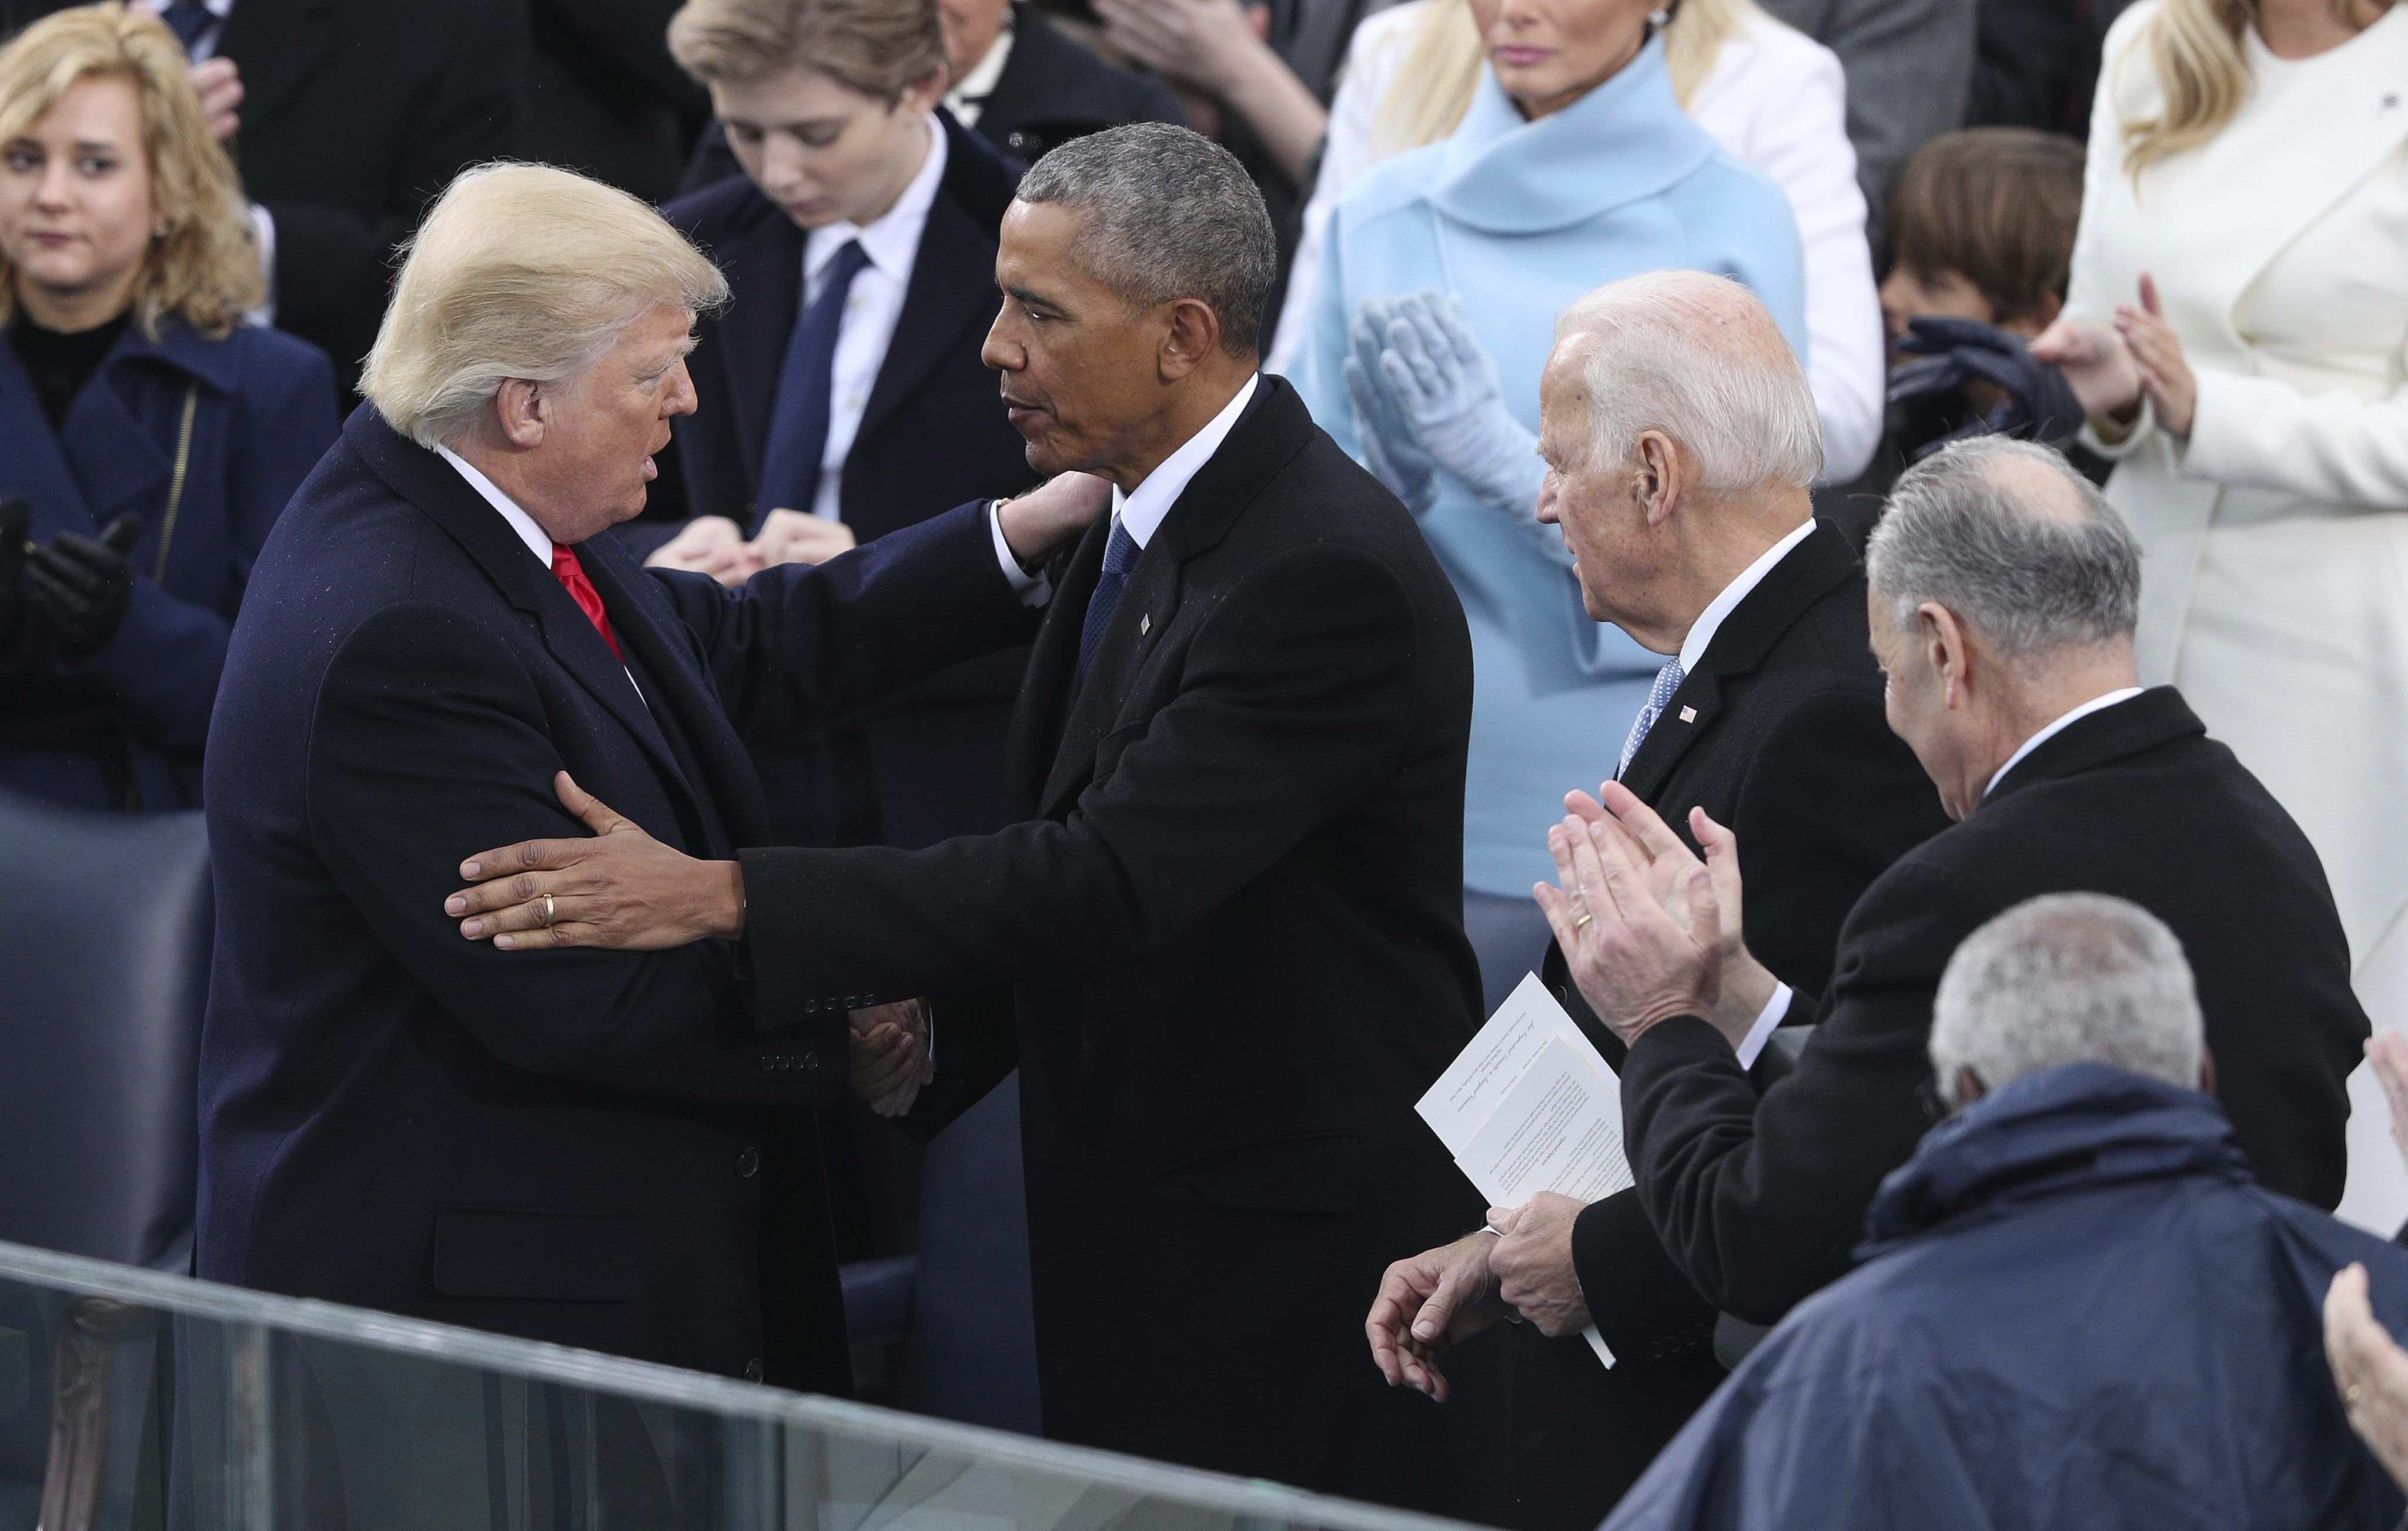 L'arribada de Trump i l'adéu d'Obama, en imatges